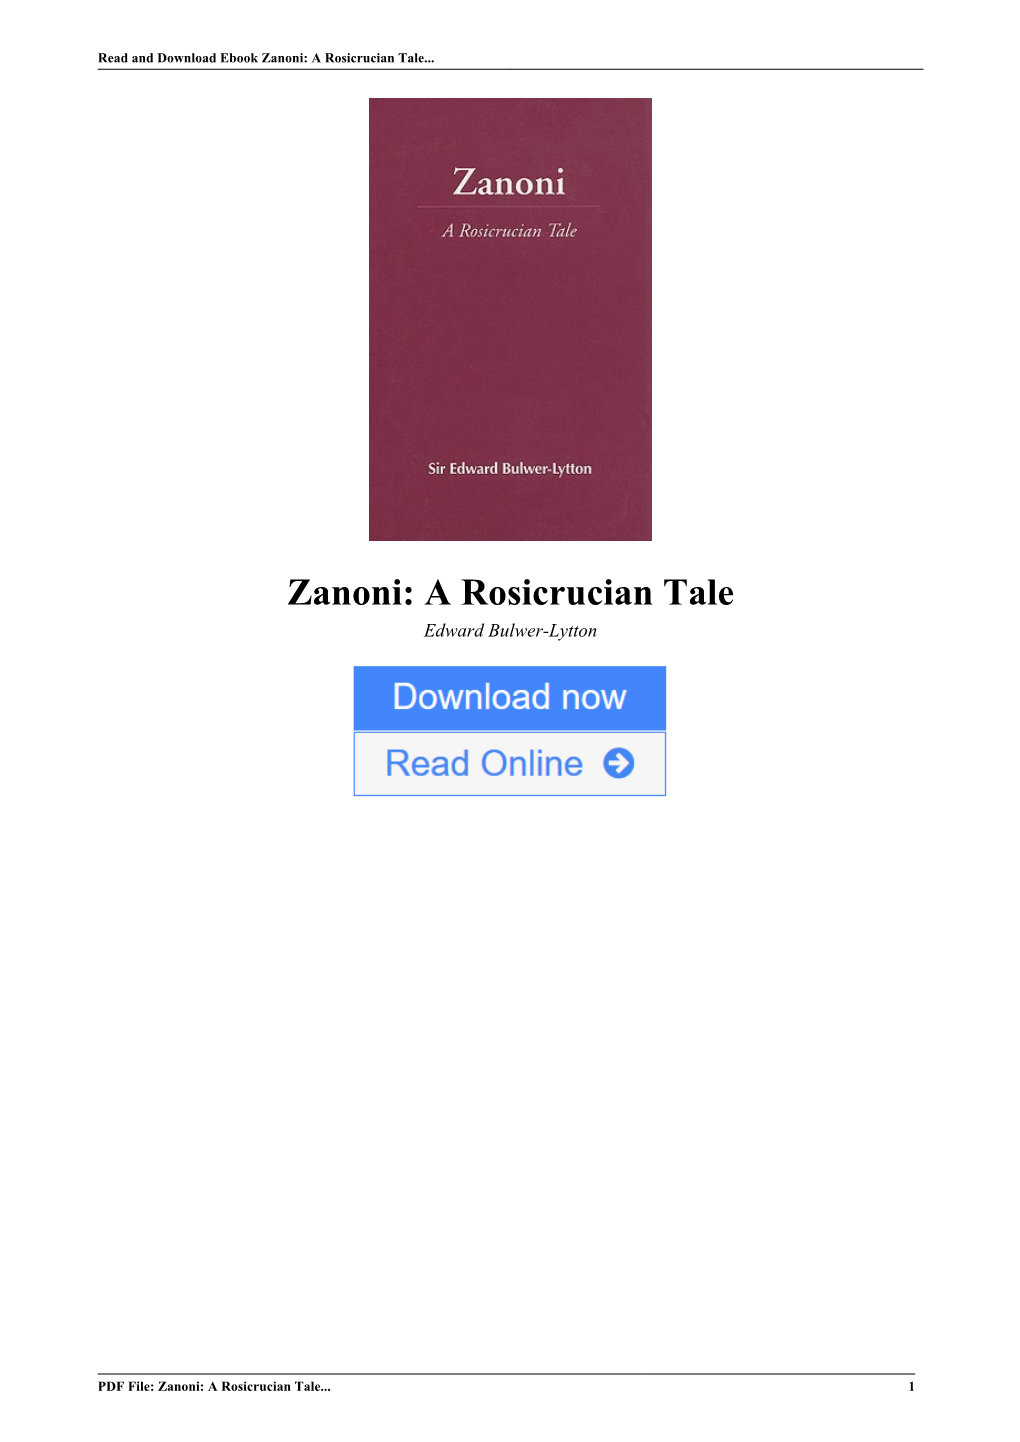 Zanoni: a Rosicrucian Tale by Edward Bulwer-Lytton